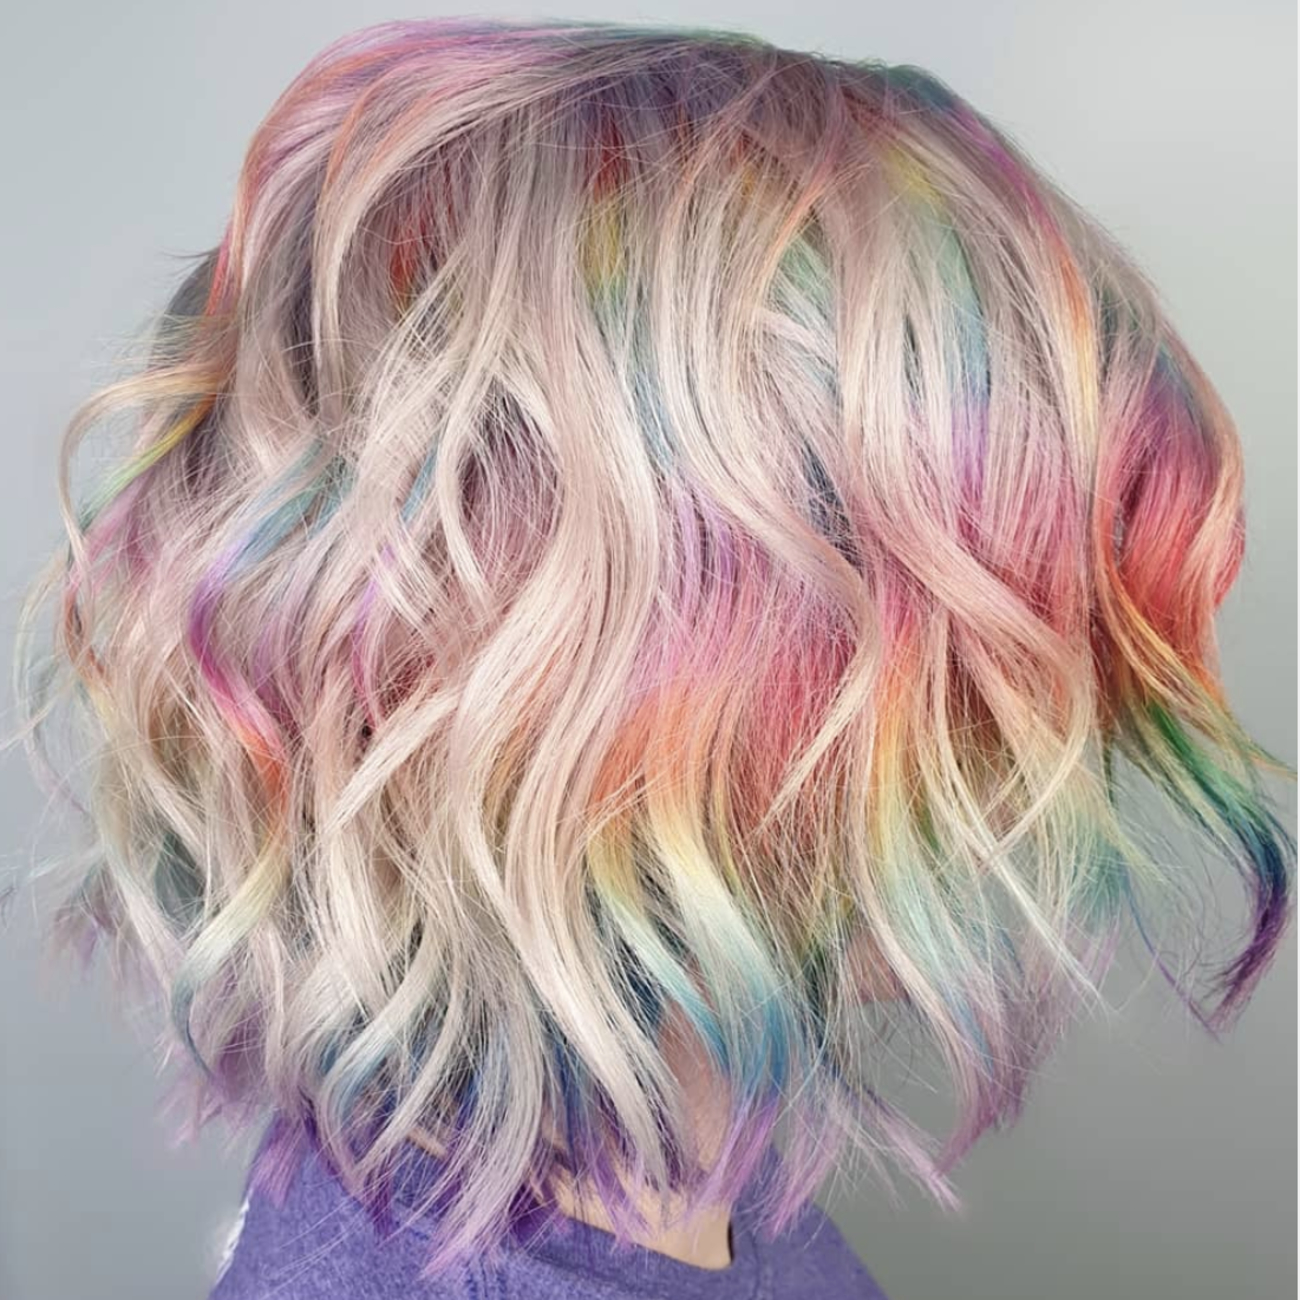 Woman with short, rainbow hair